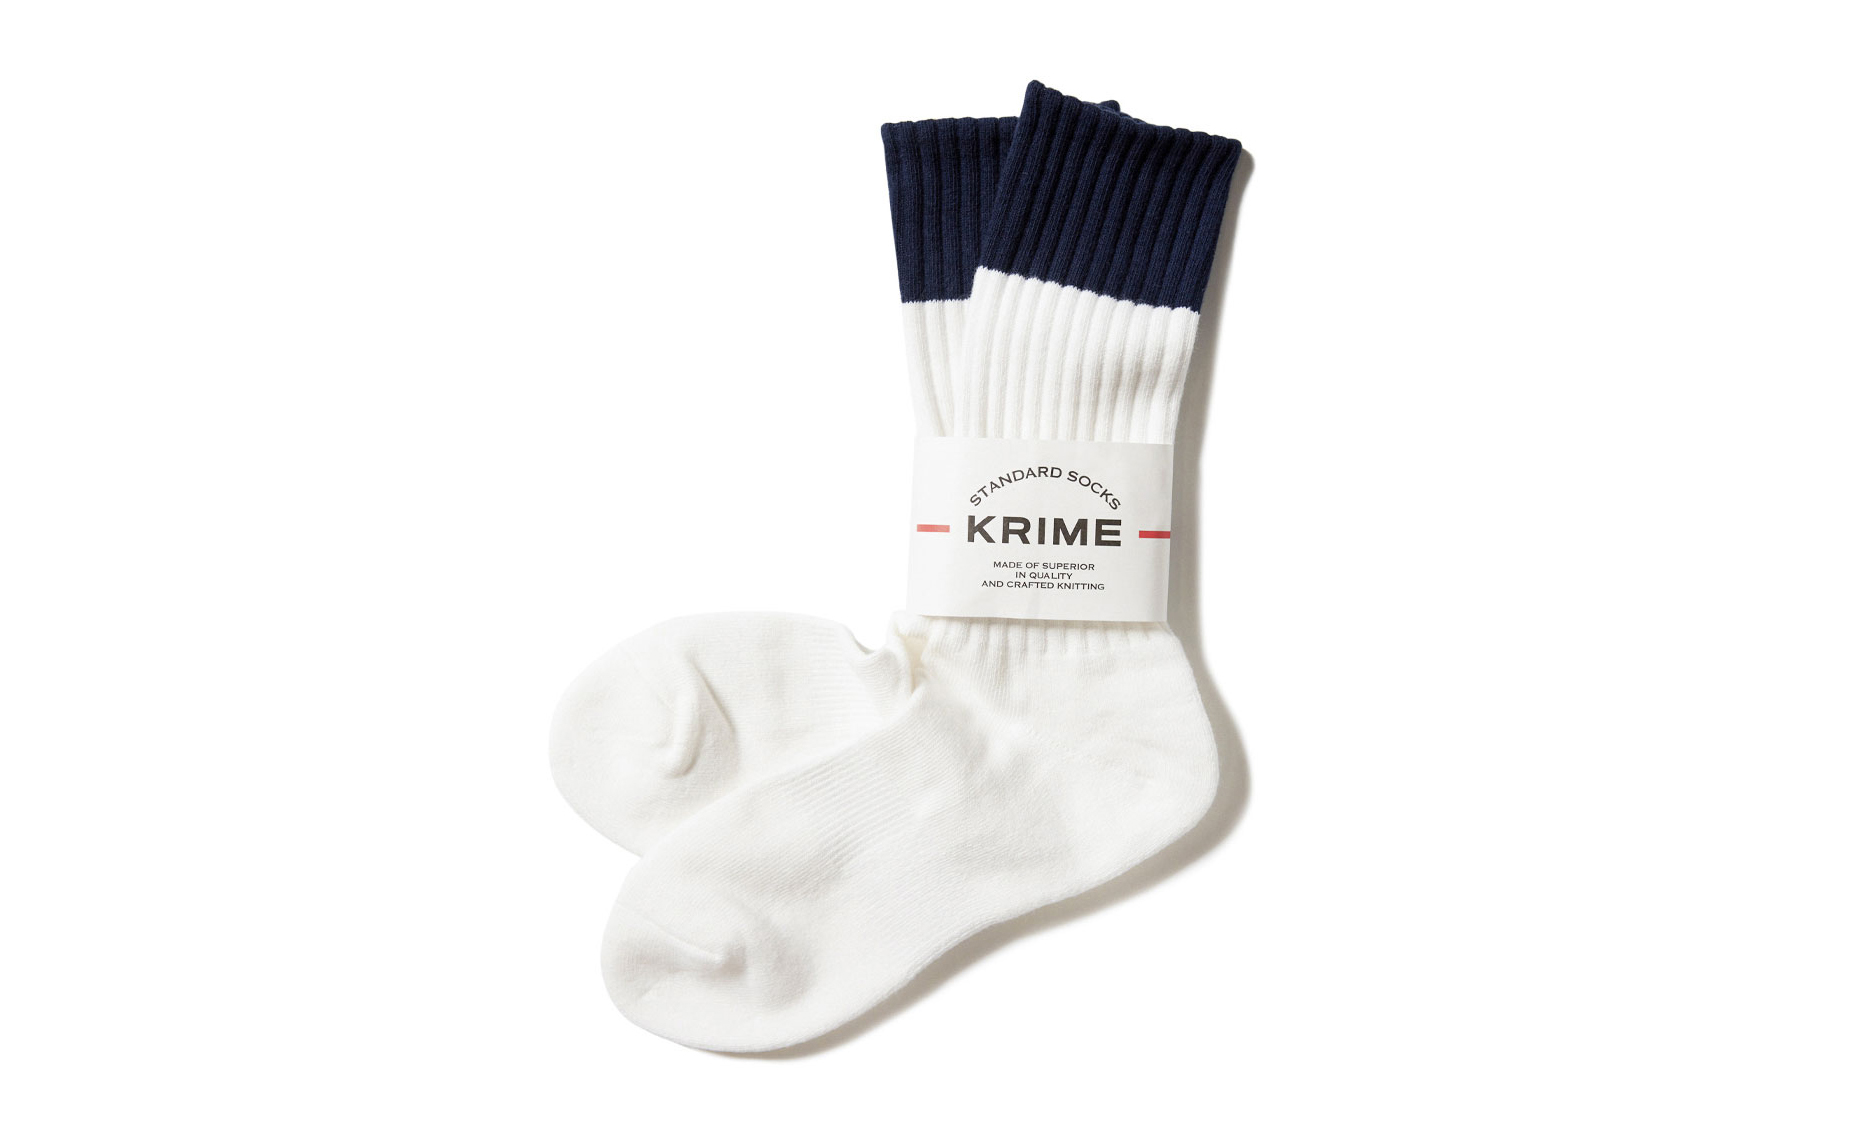 KRIME 发布白色藏蓝拼色长袜基础单品